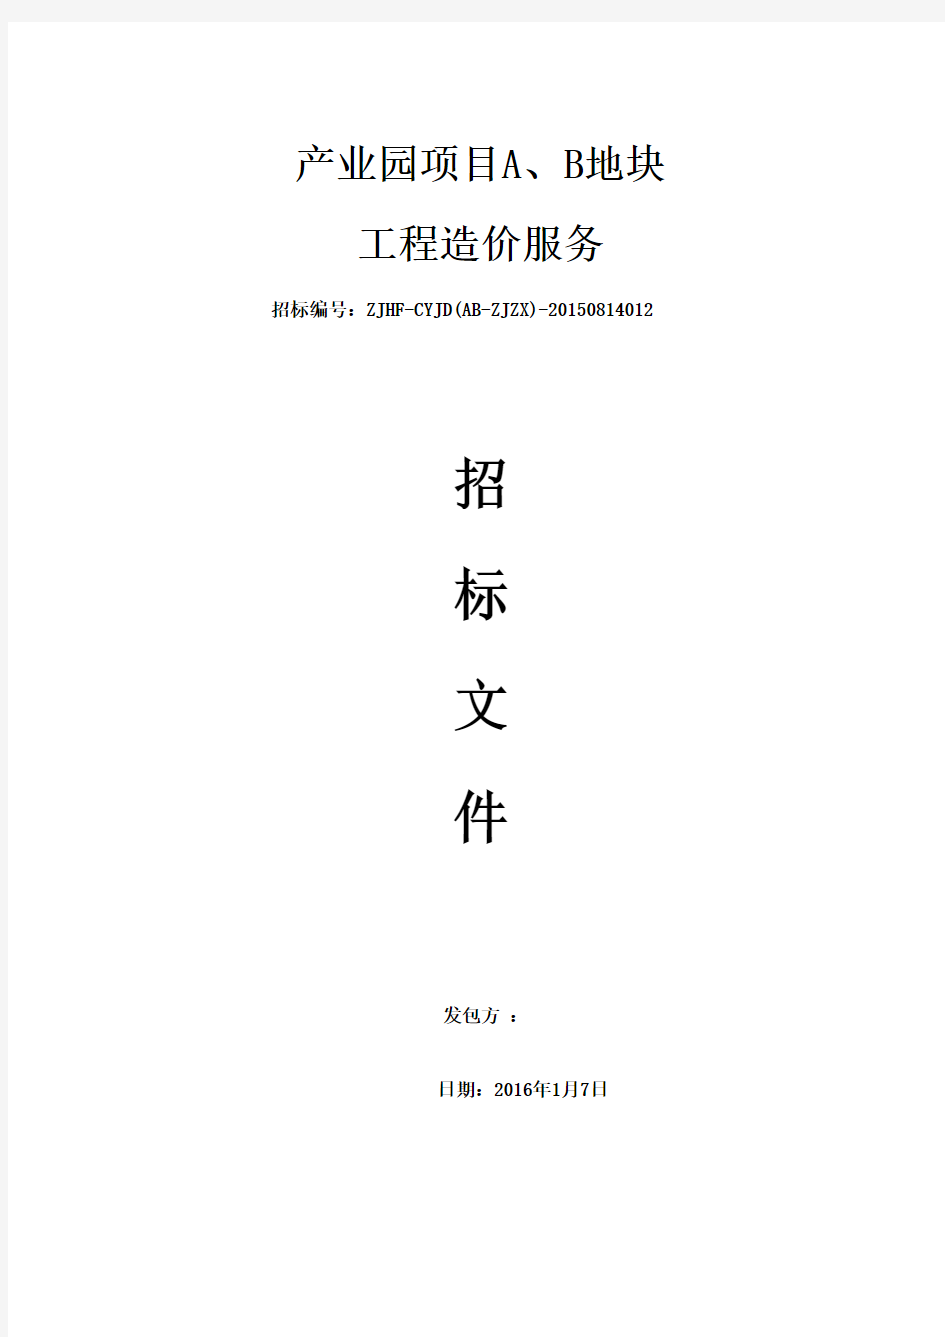 2-造价咨询招标文件(2015.9.30)